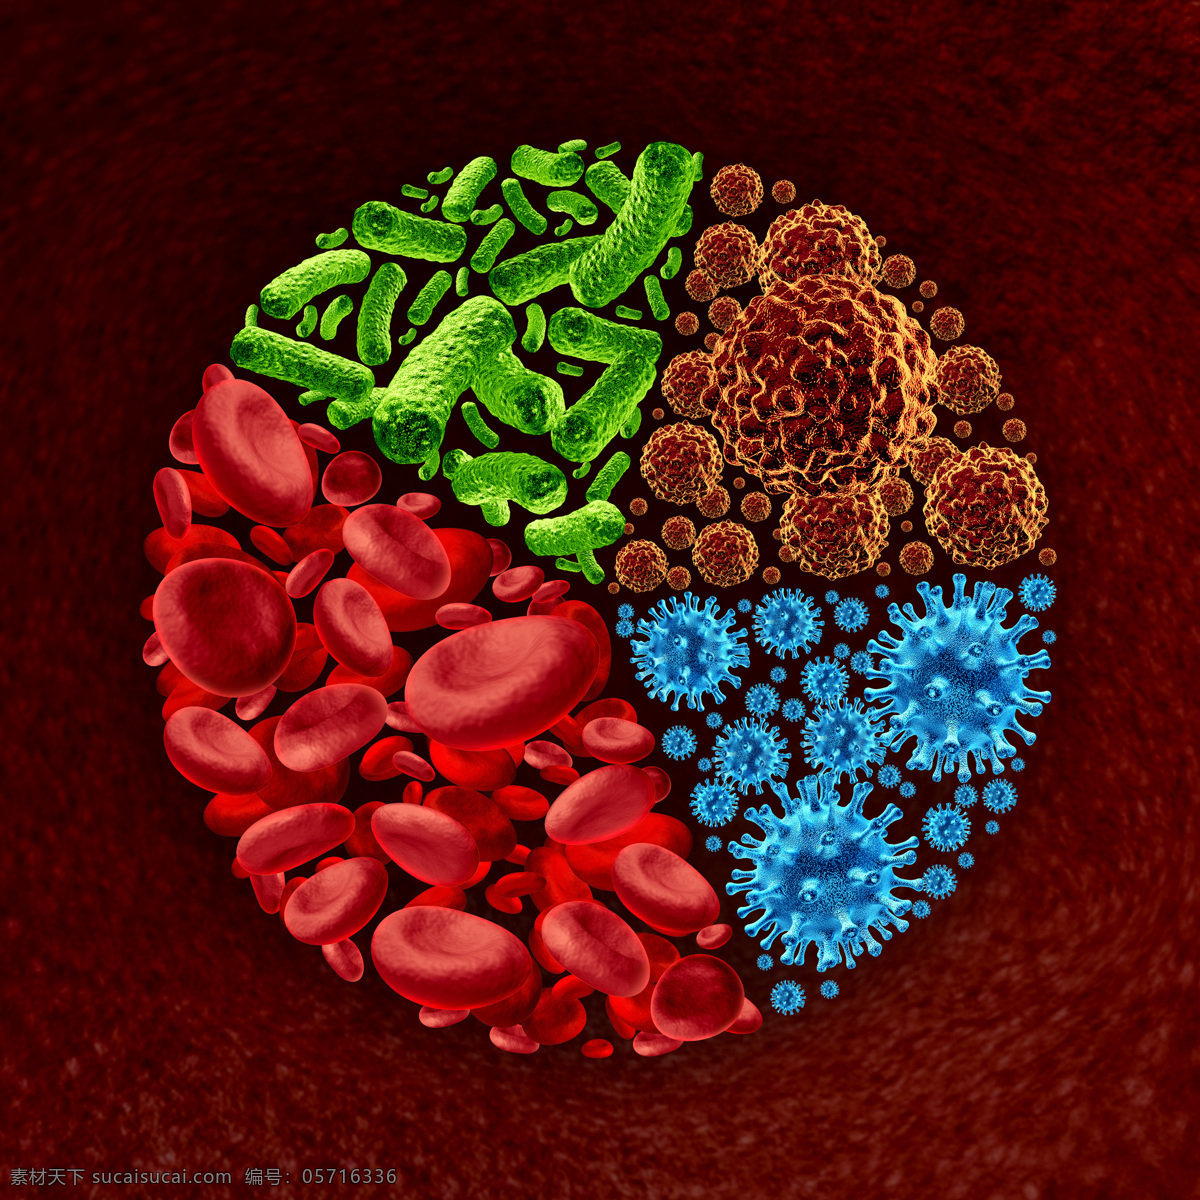 细菌 病菌 血小板 红细胞 超级病菌 细胞 身体细胞 生物 医疗护理 现代科技